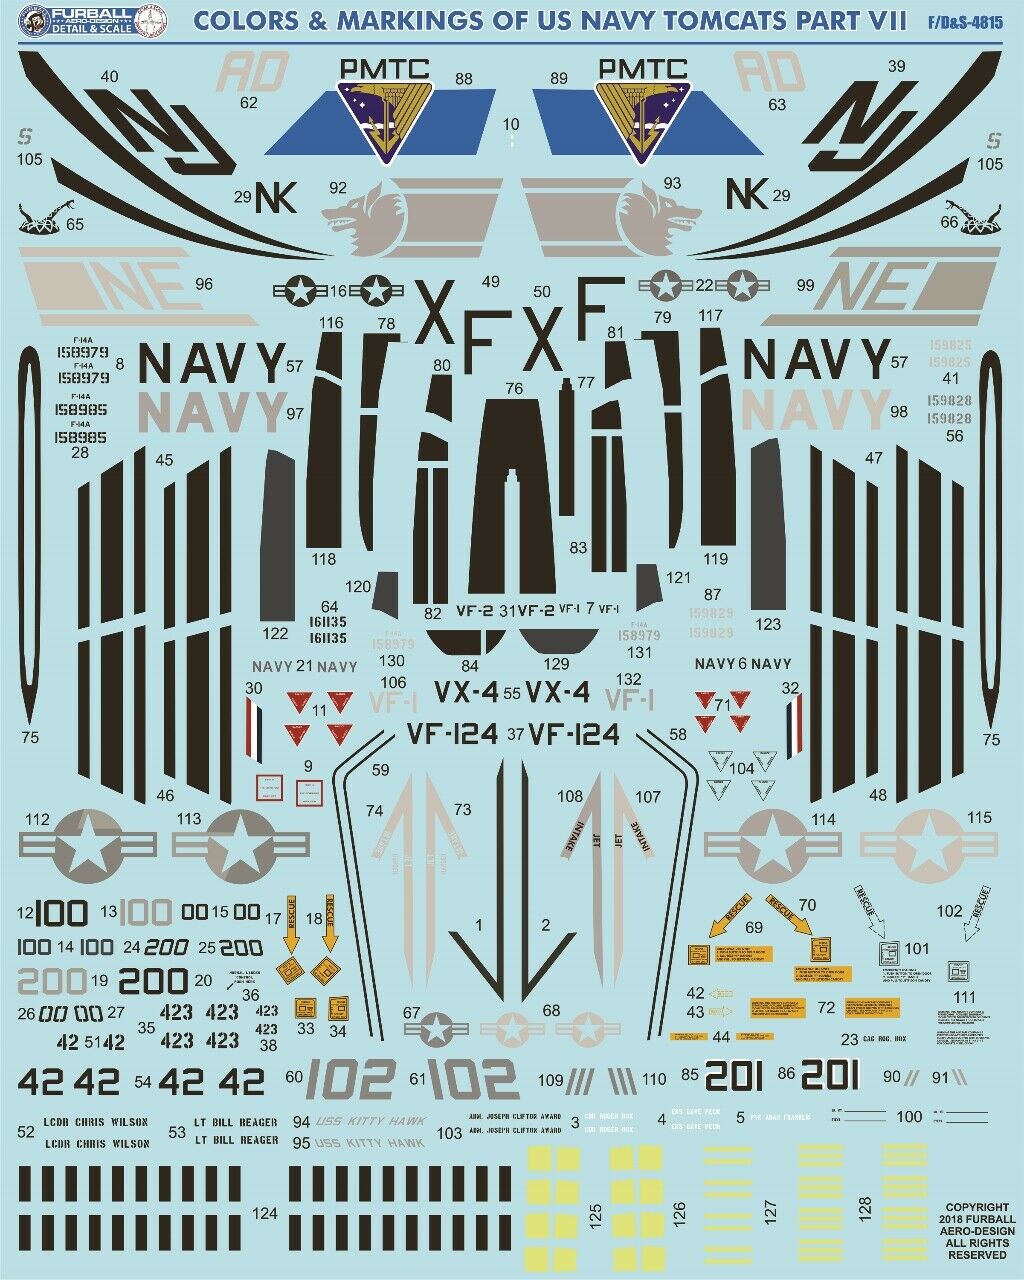 1/48 F-14A 雄猫战斗机"色彩与标记"(7) - 点击图像关闭